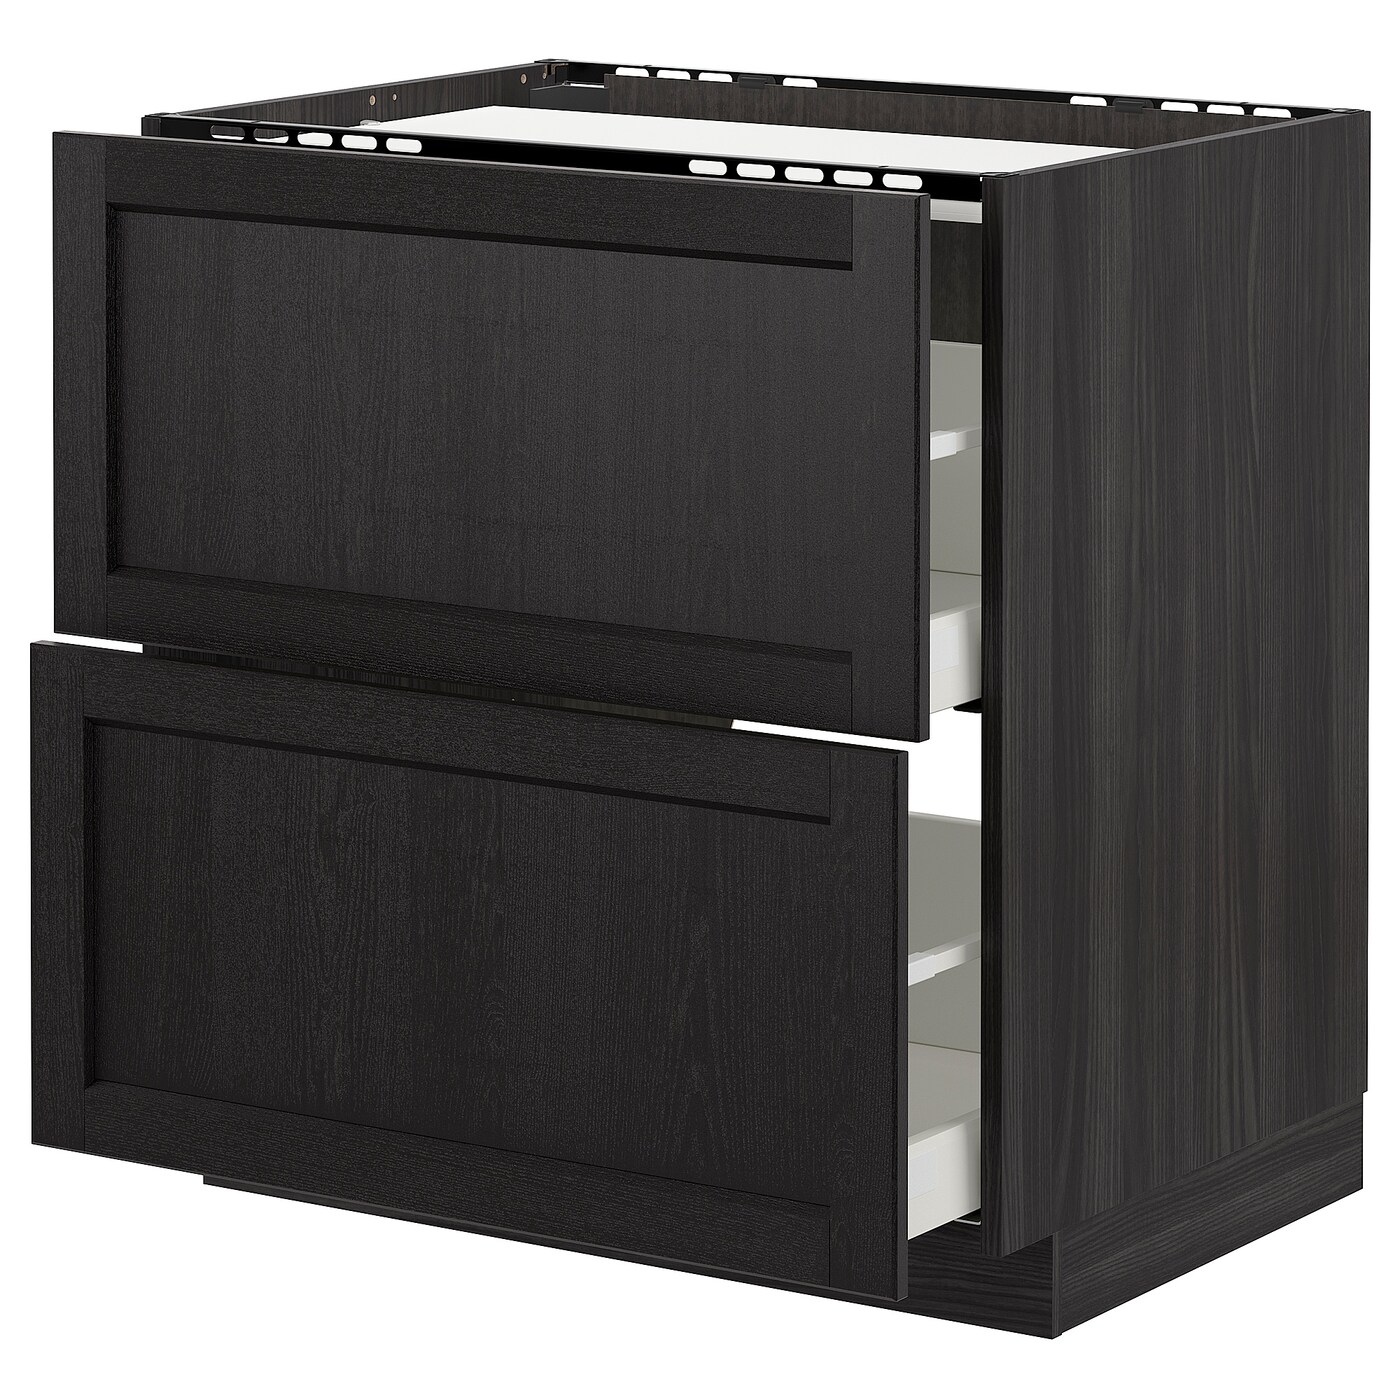 Напольный кухонный шкаф  - IKEA METOD MAXIMERA, 88x61,8x80см, черный, МЕТОД МАКСИМЕРА ИКЕА